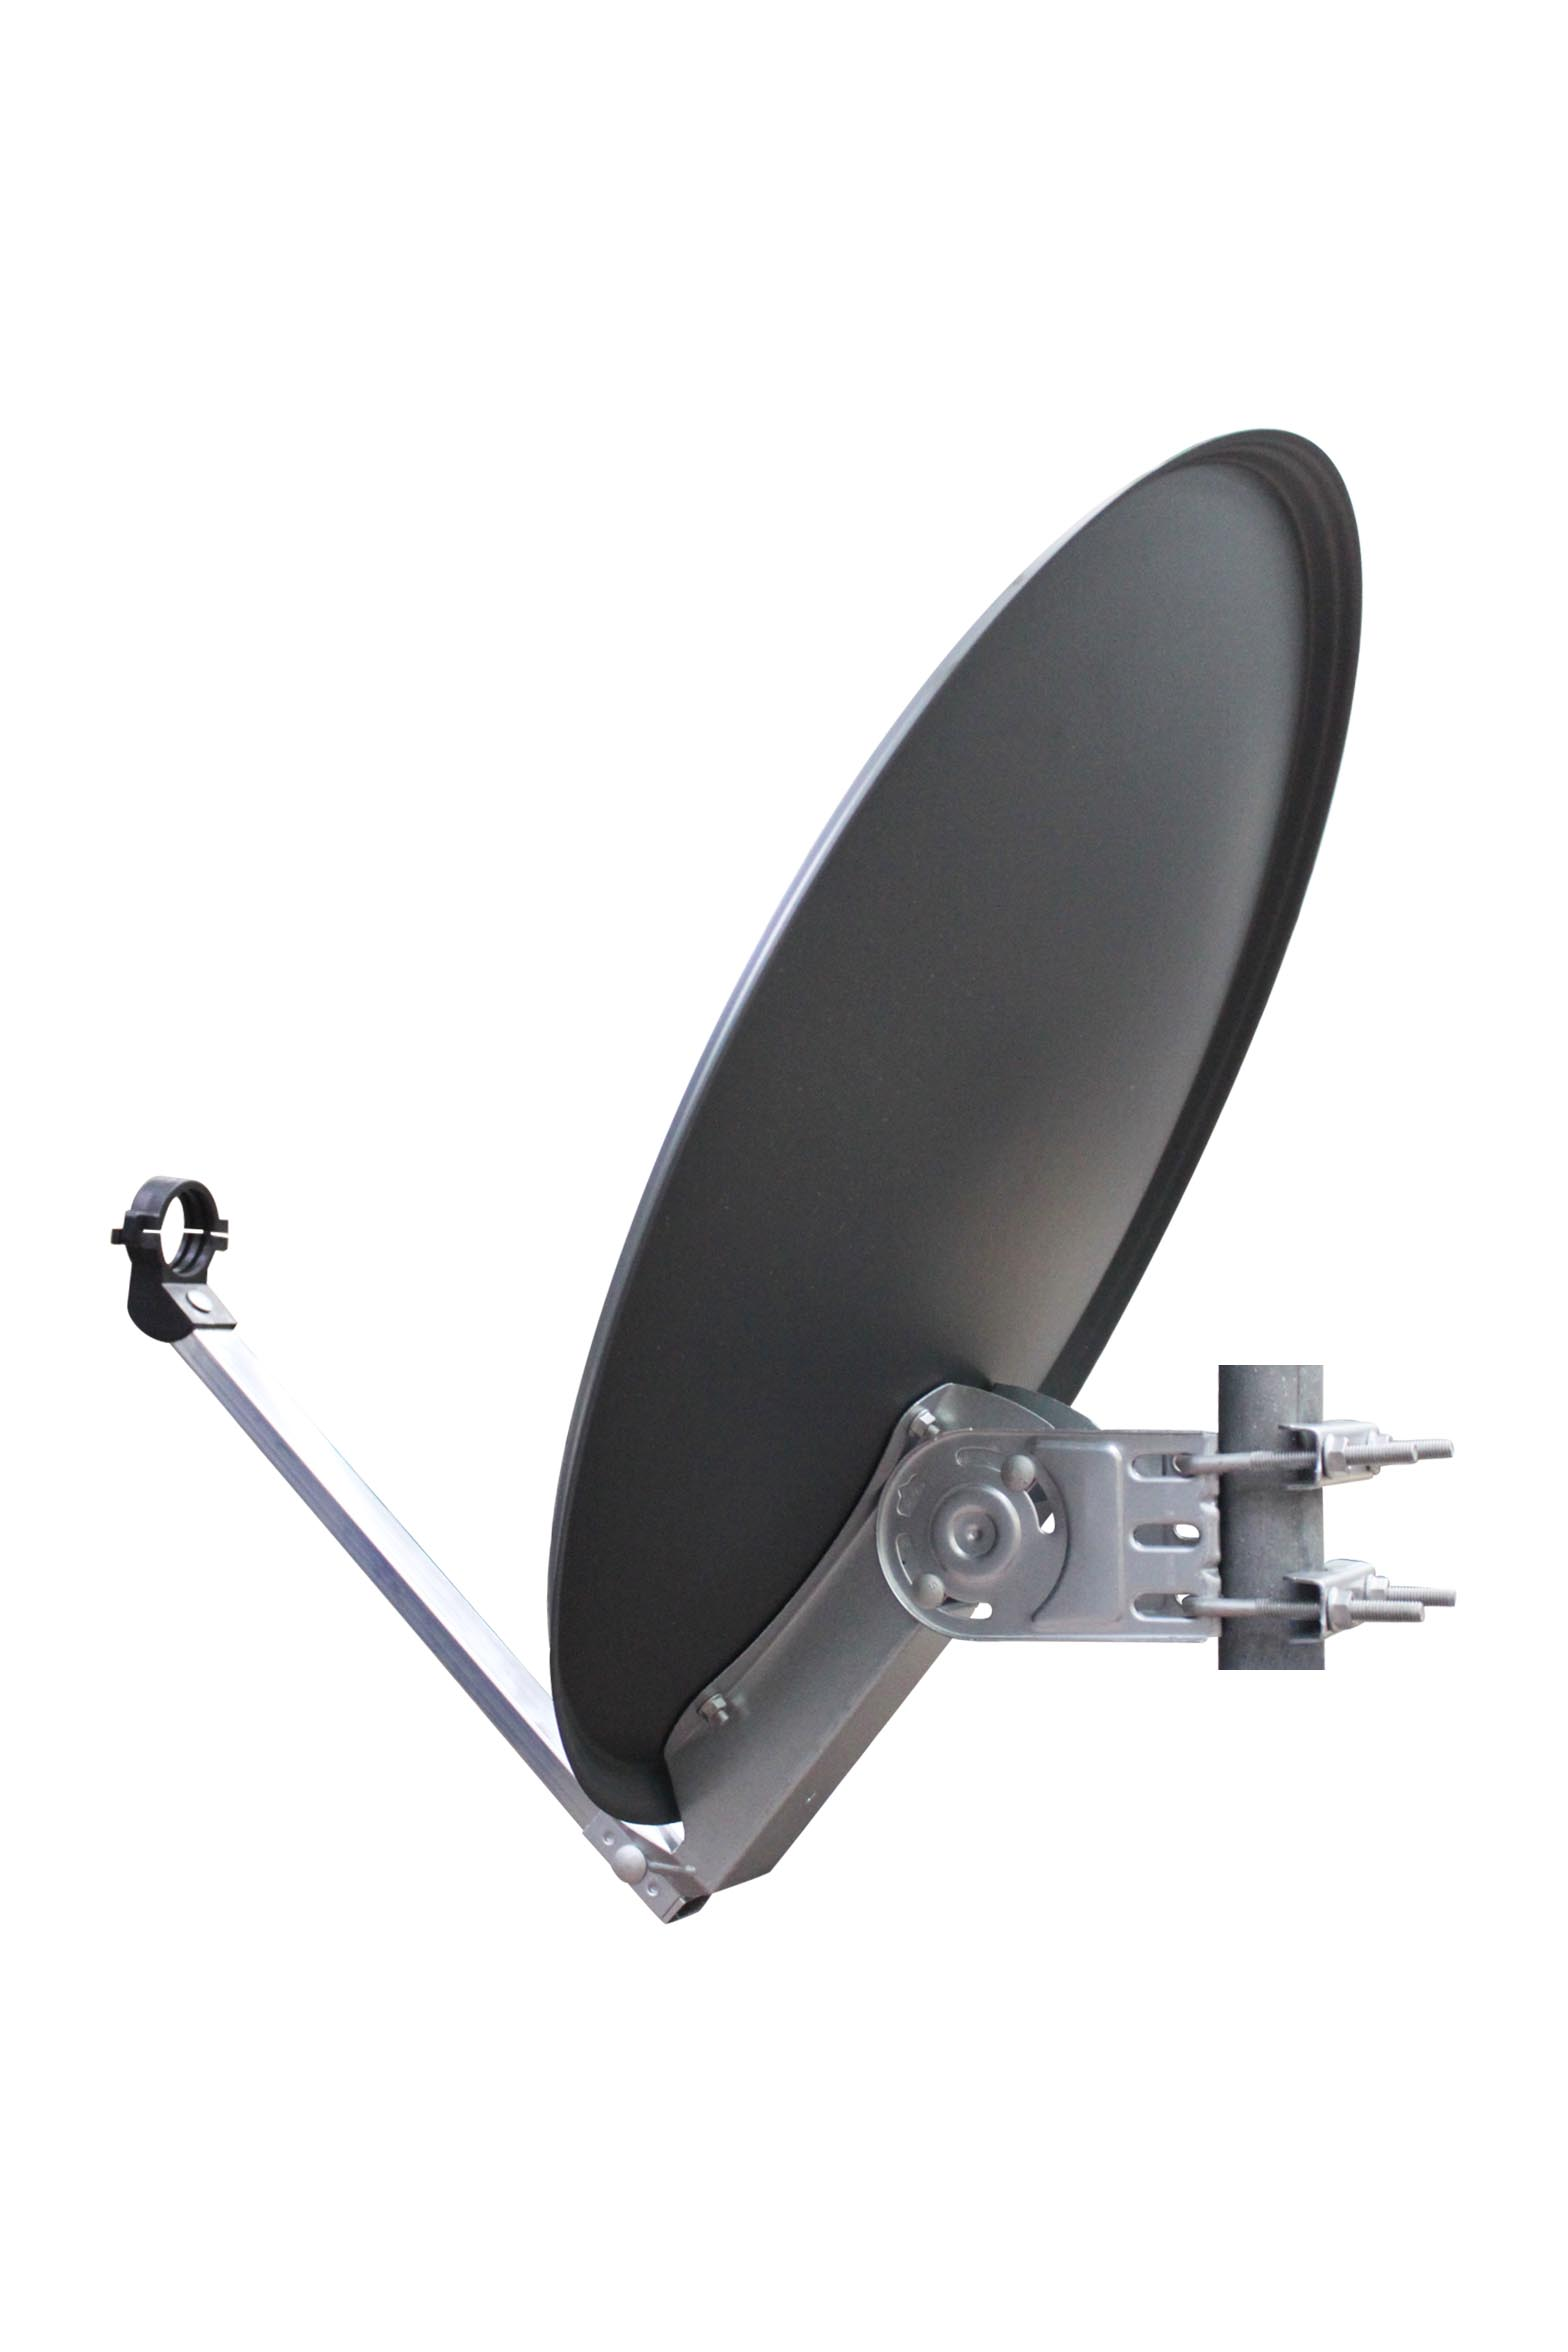 RED OPTICUM QA60 Satellitenschüssel 60cm anthrazit 60 Satellitenantenne Alu Sat-Spiegel - aus Sat-Antenne -Witterungsbeständige cm